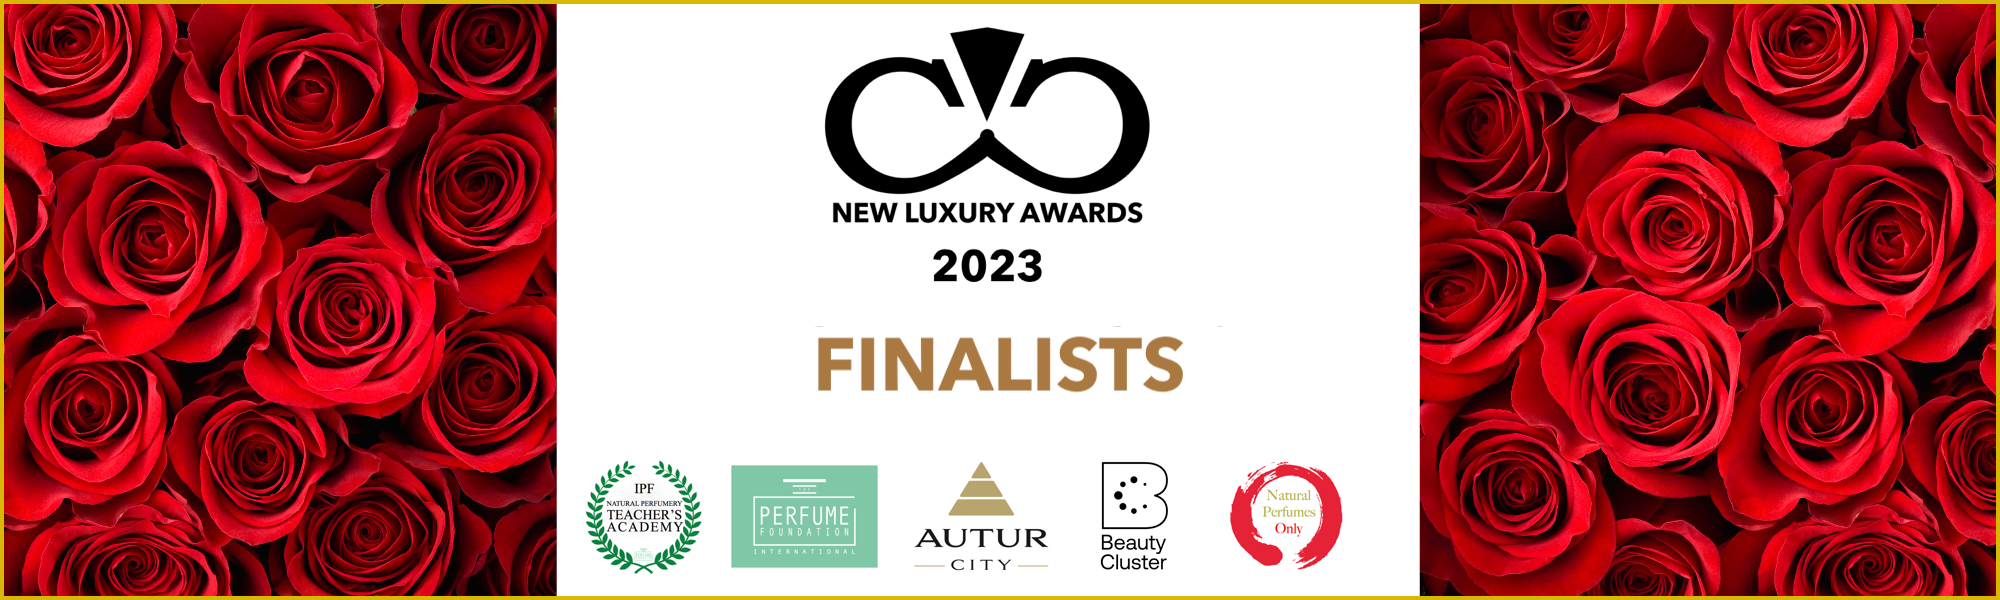 Finalists New Luxury Awards 2023